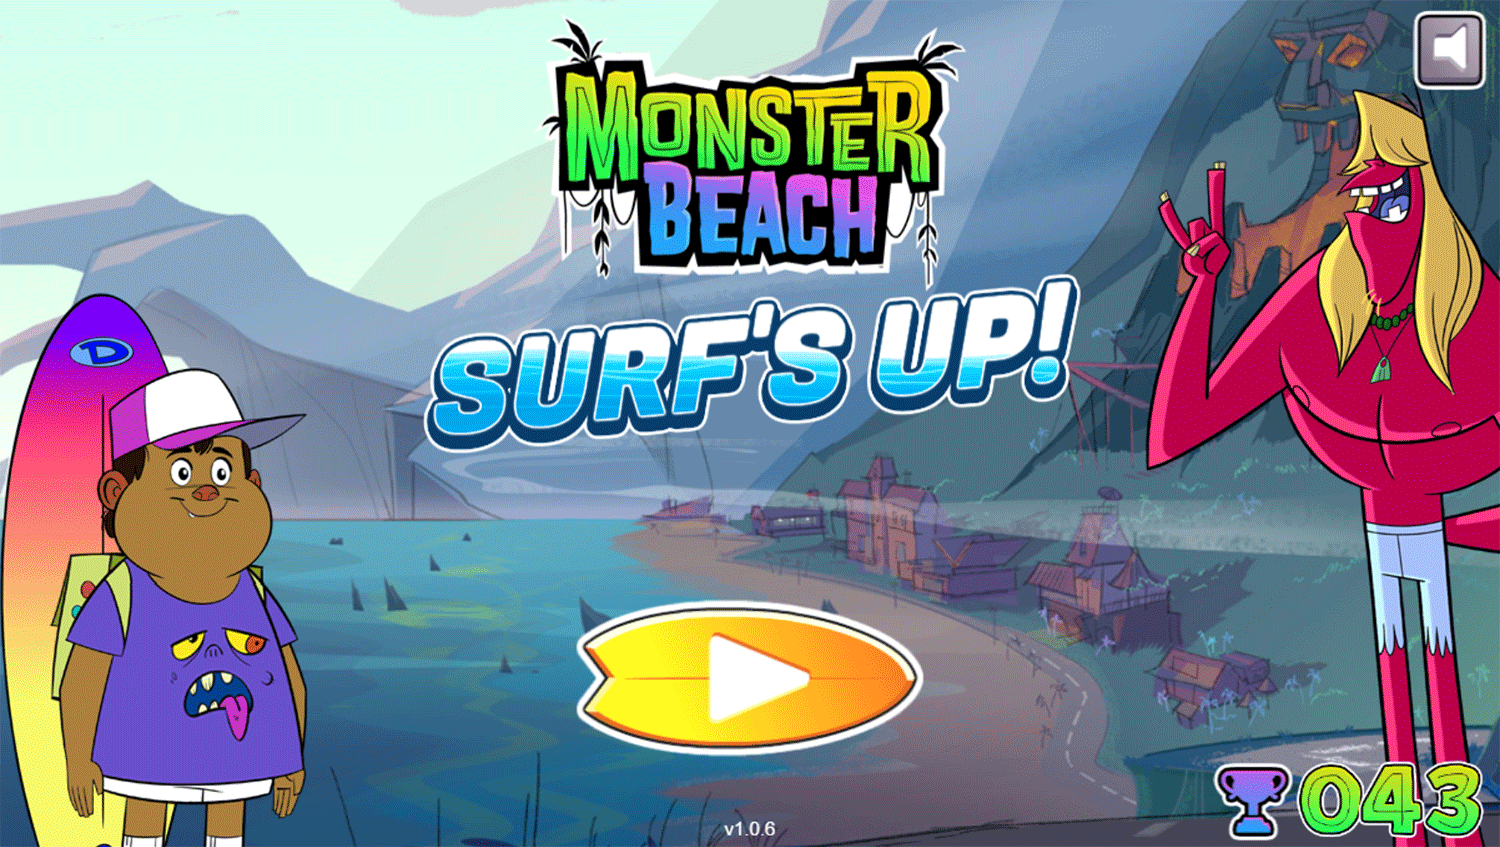 Monster Beach Surfs Up Game Welcome Screen Screenshot.